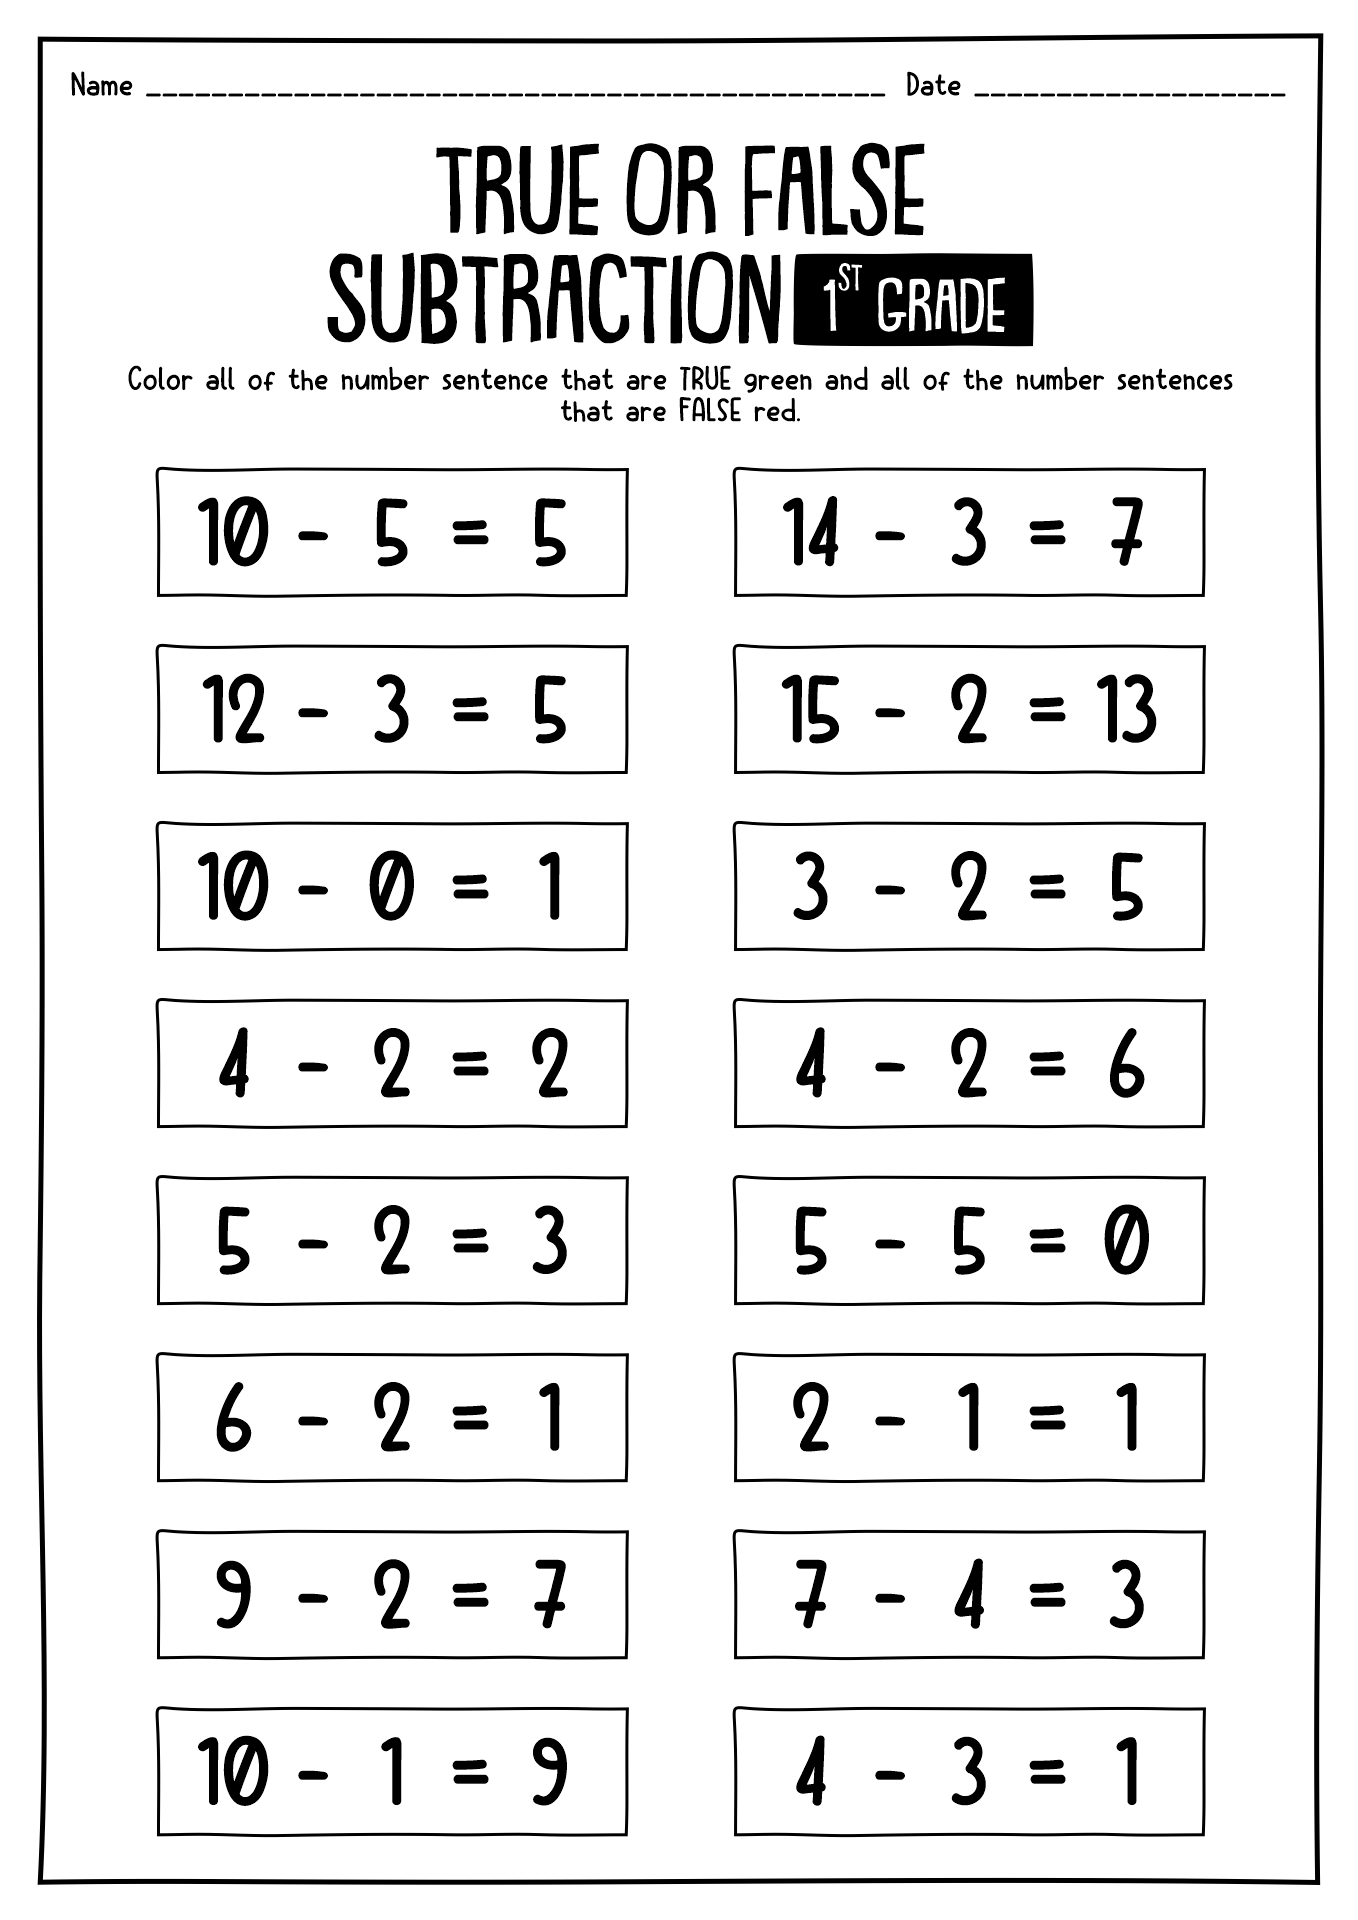 True Or False Subtraction Worksheet For 1st Grade Printable